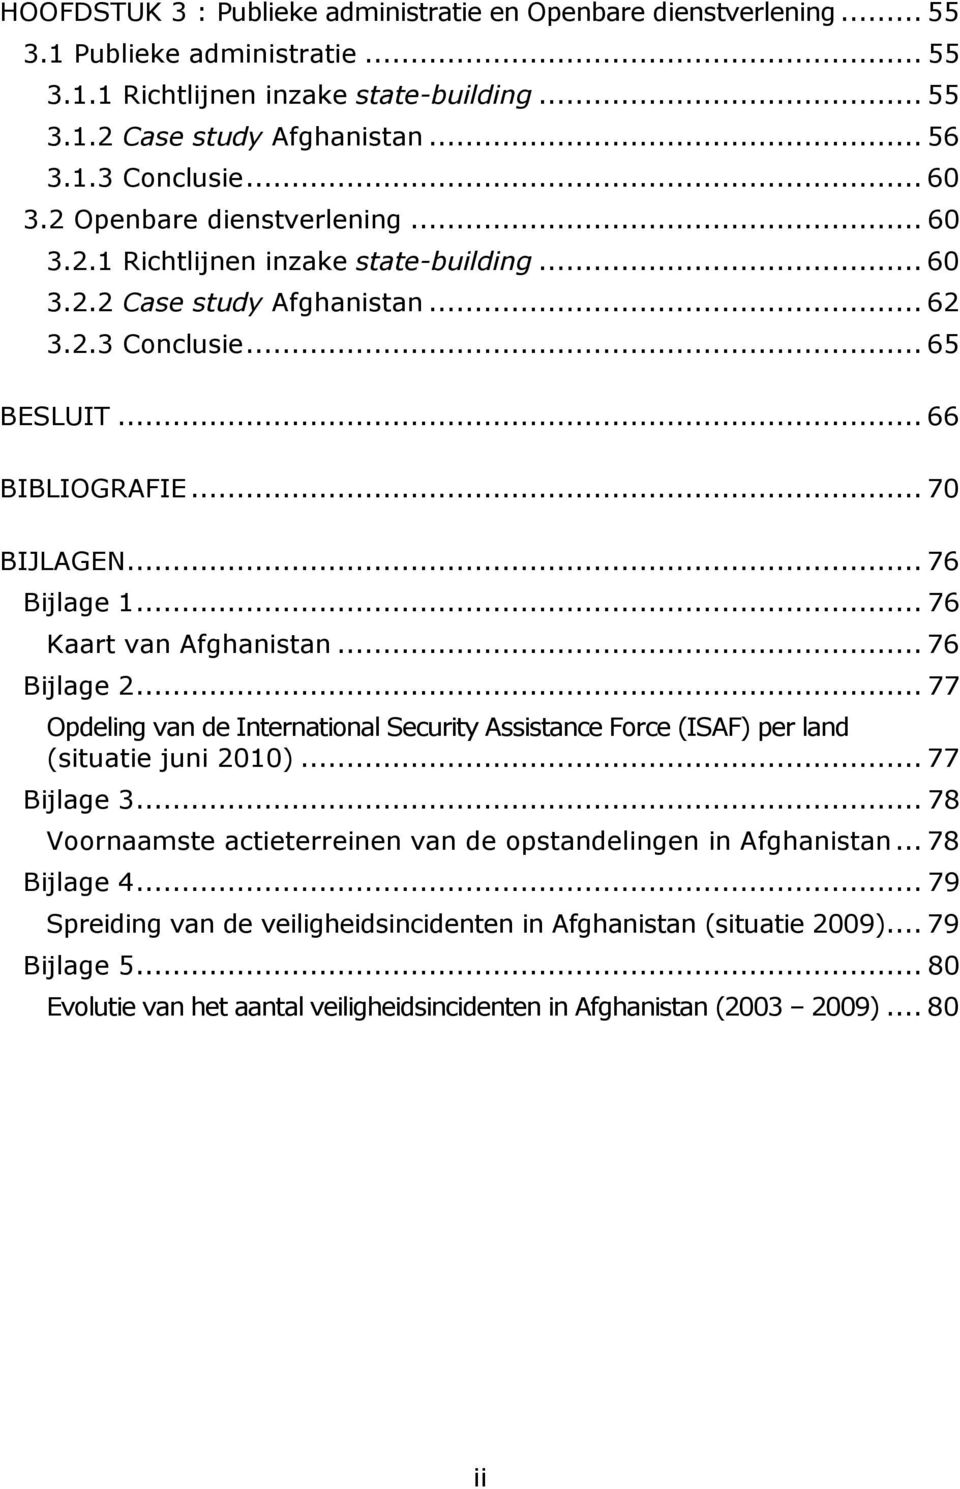 .. 76 Kaart van Afghanistan... 76 Bijlage 2... 77 Opdeling van de International Security Assistance Force (ISAF) per land (situatie juni 2010)... 77 Bijlage 3.